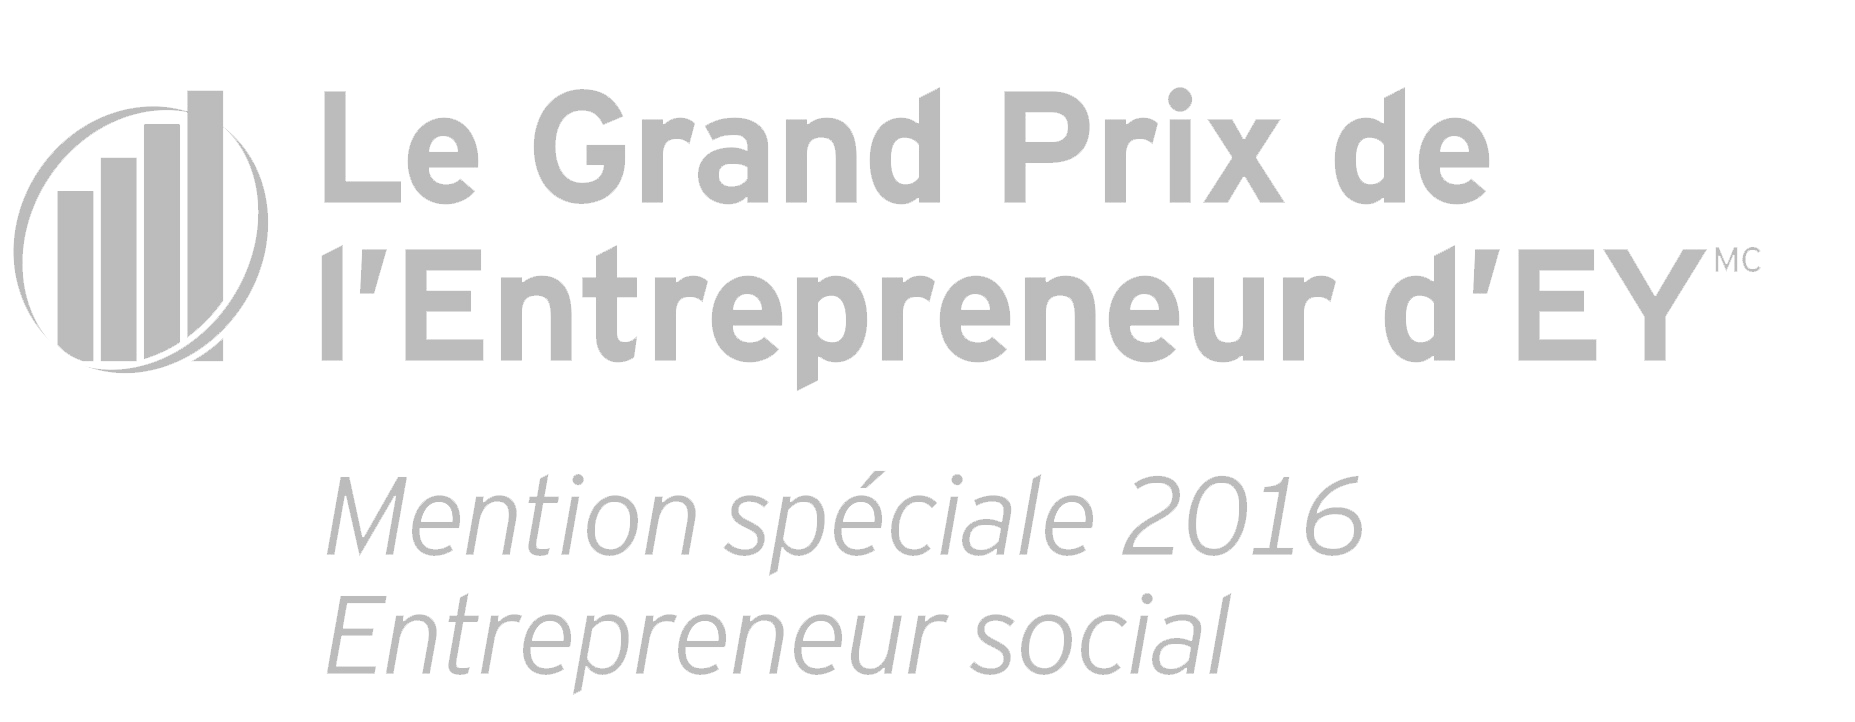 Le Grand Prix de l'Entrepreneur d'EY, Mention spéciale 2016 Entrepreneur social